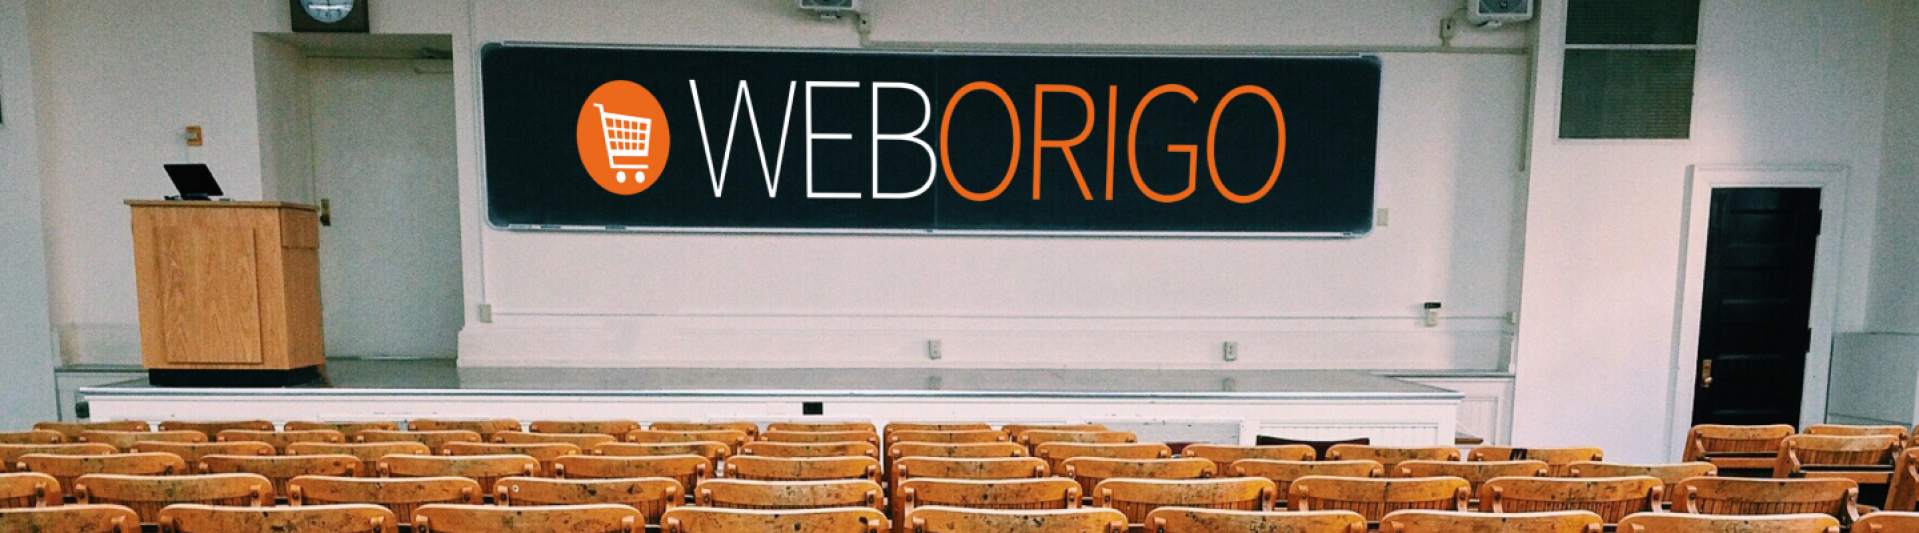 WebOrigo Institutions Banner Image